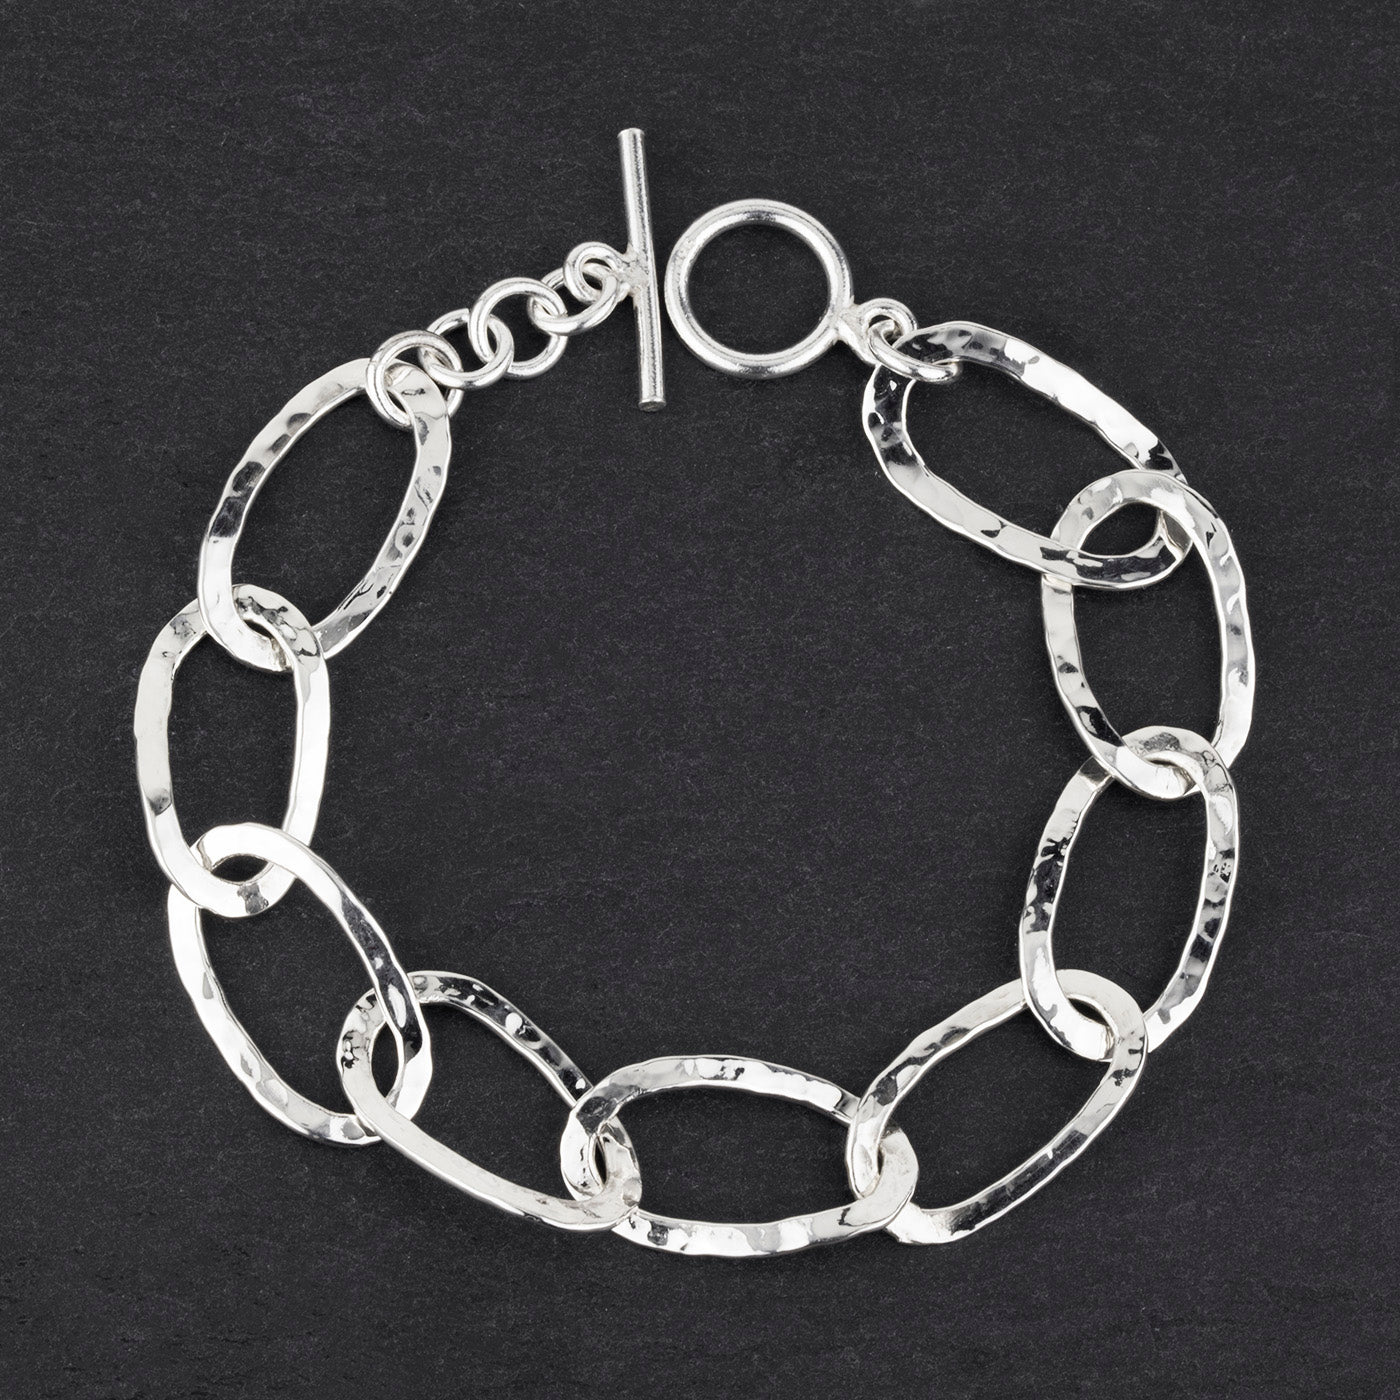 hammered silver open oval link bracelet